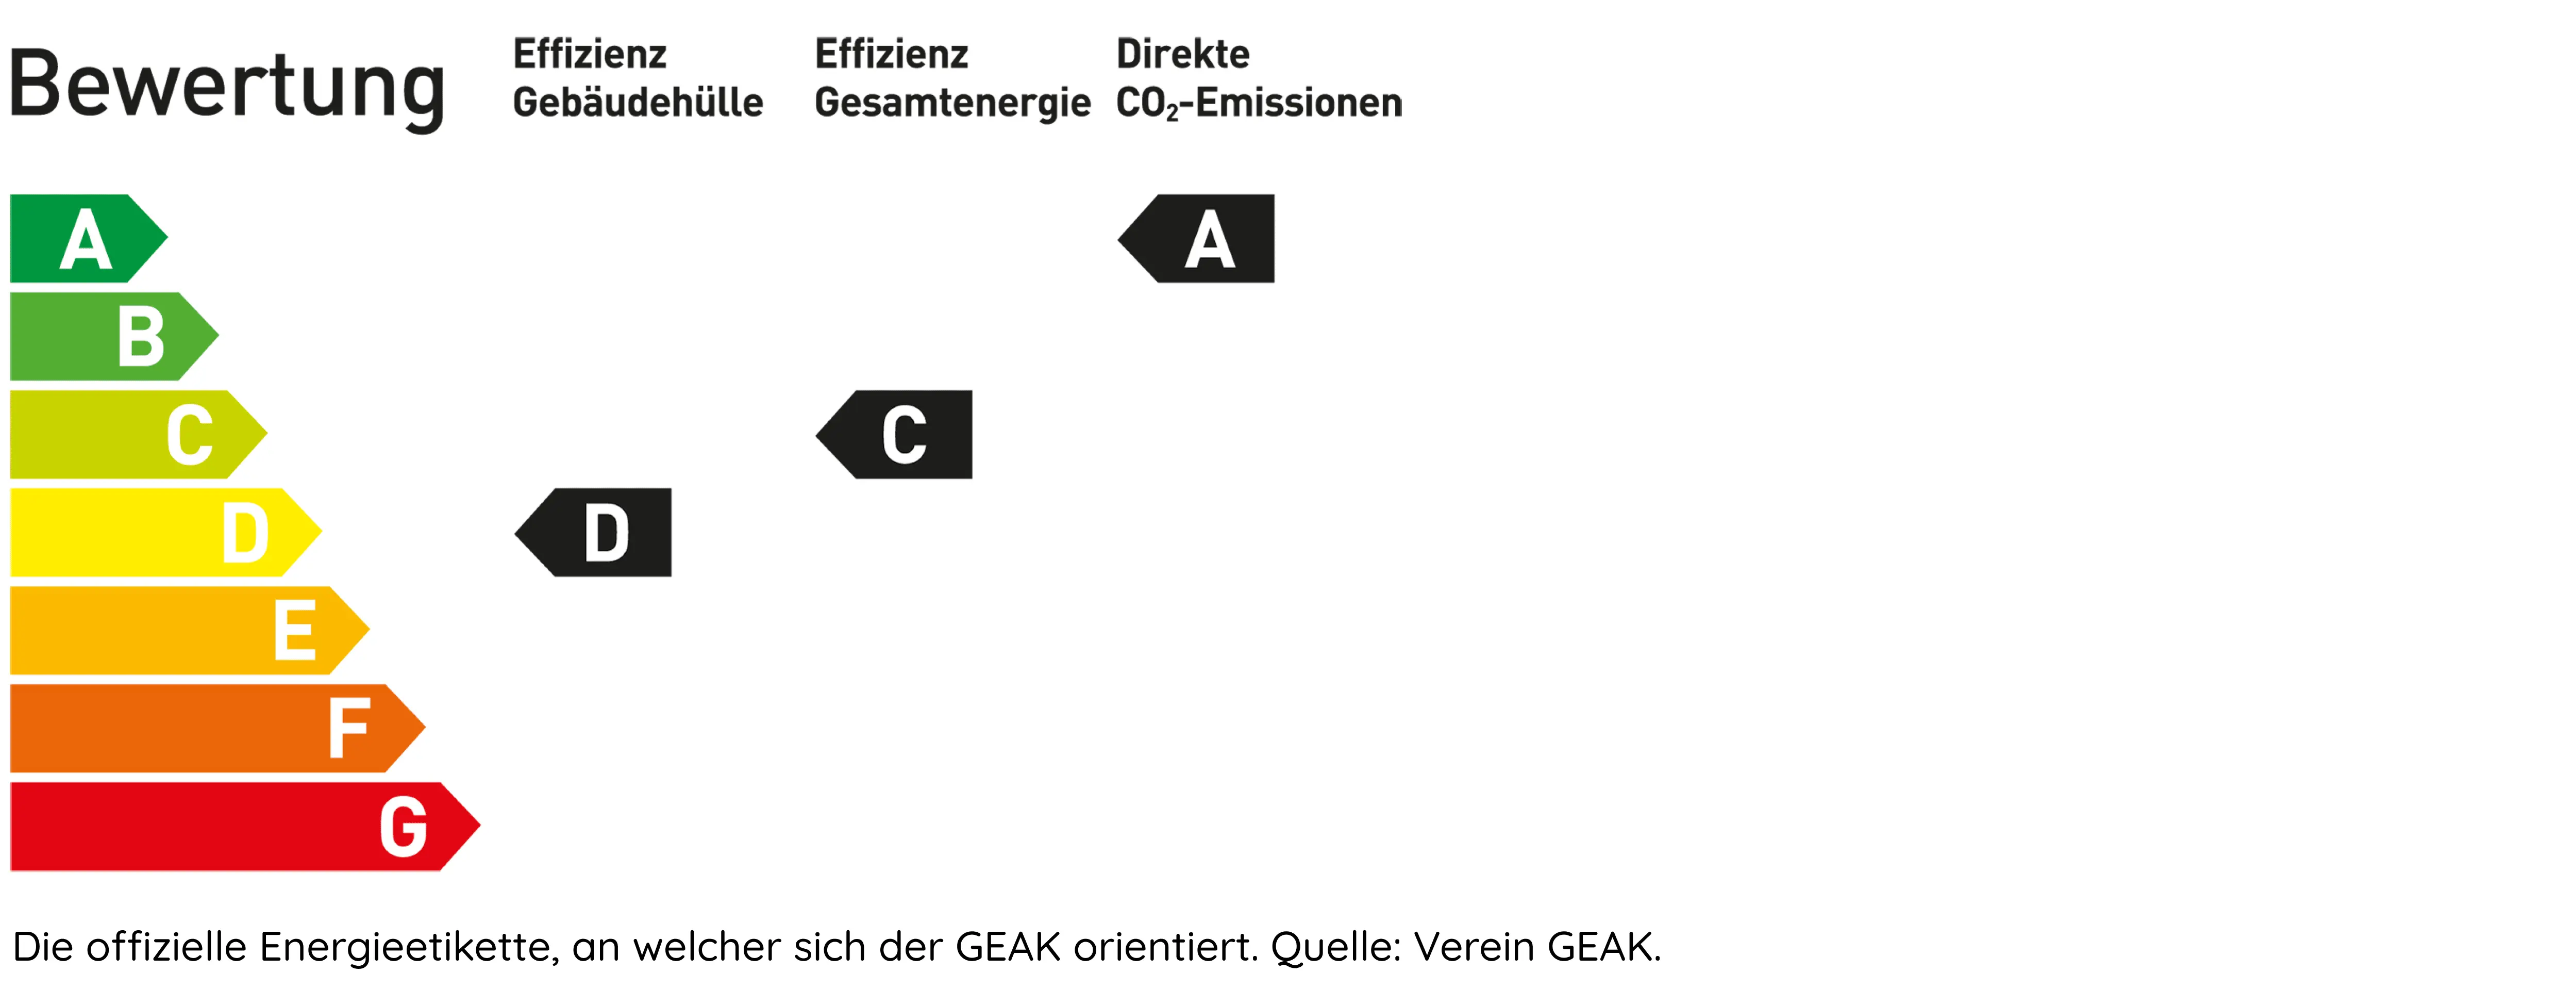 GEAK Etikette beschreibt die Energieeffizienz eines Gebaeudes